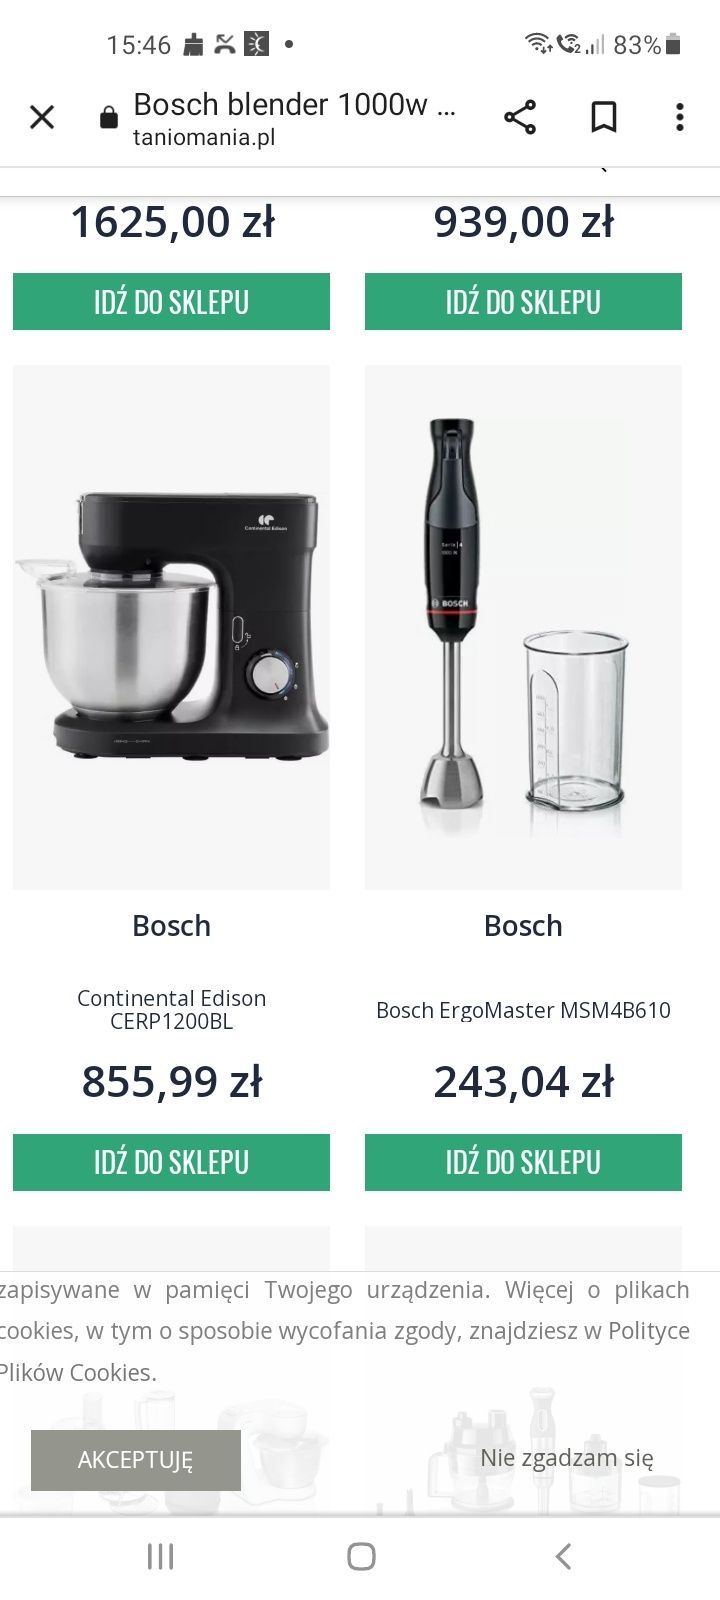 Bosch 1000 zapraszam